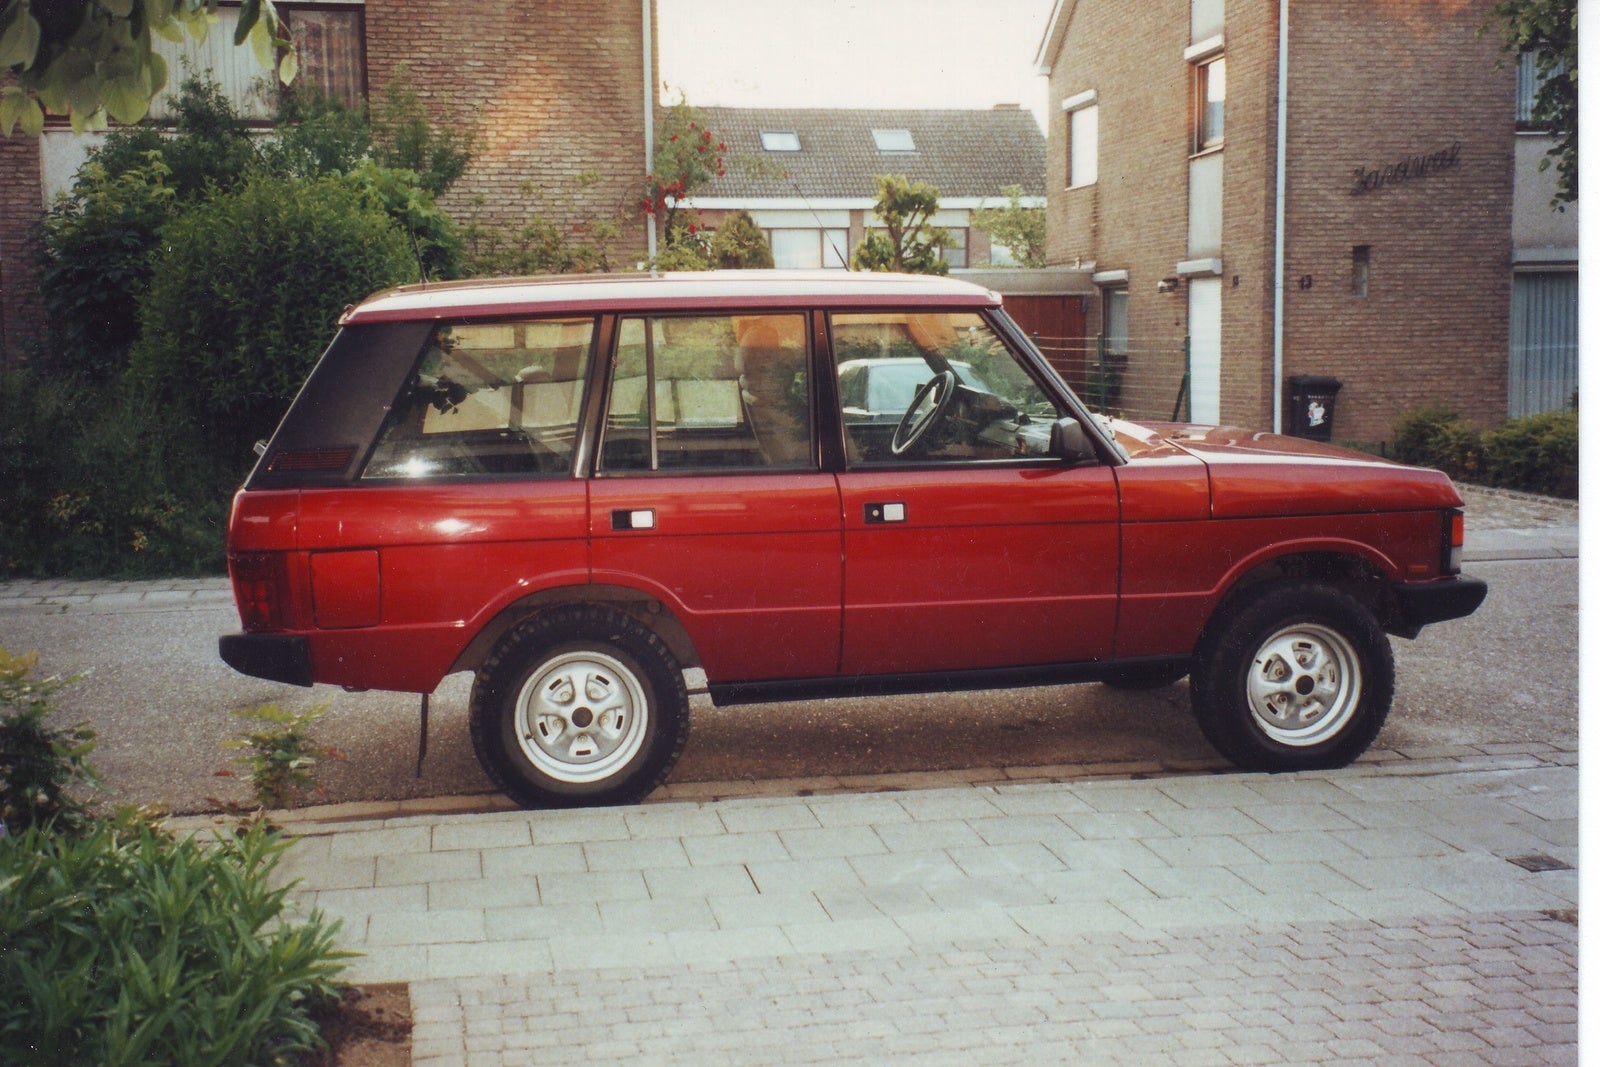 range rover 1990